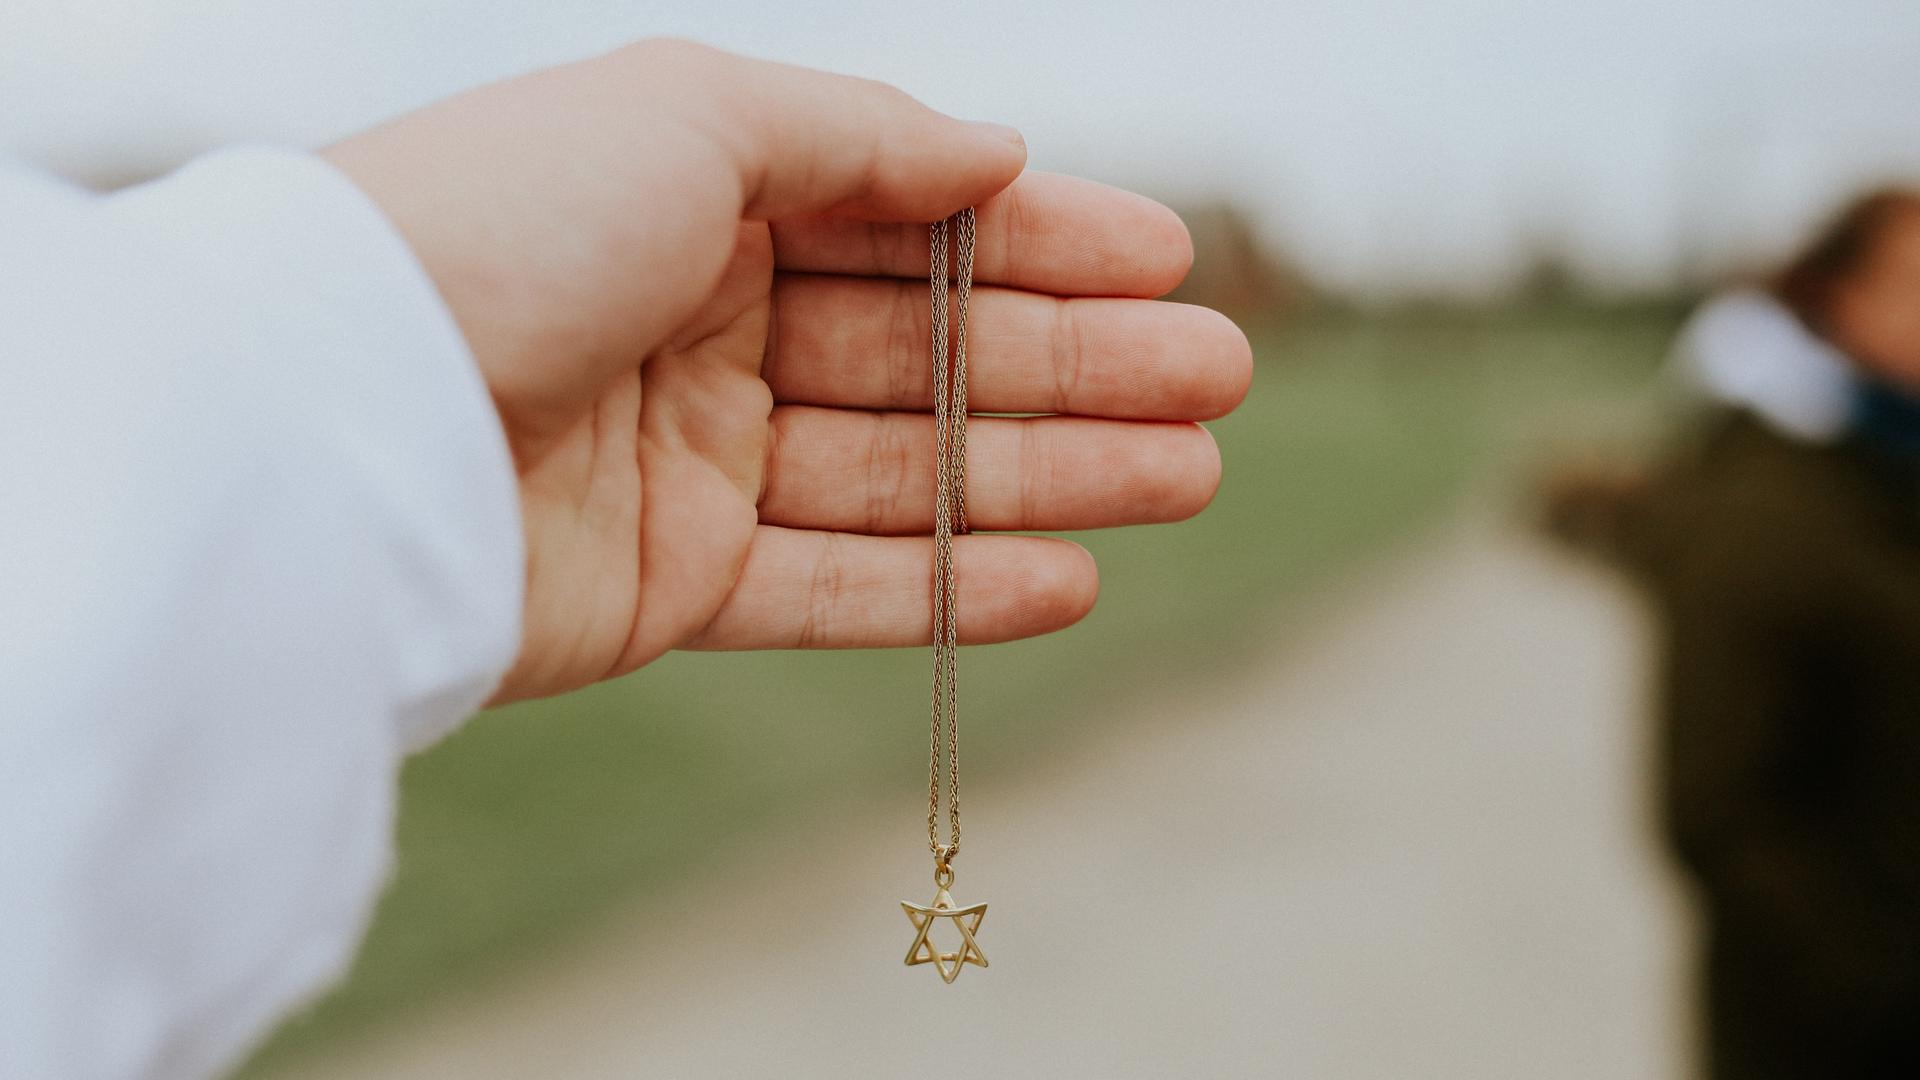 Nahaufnahme einer Hand, die eine goldene Halskette mit einem Anhänger in Form eines Davidsterns hält.